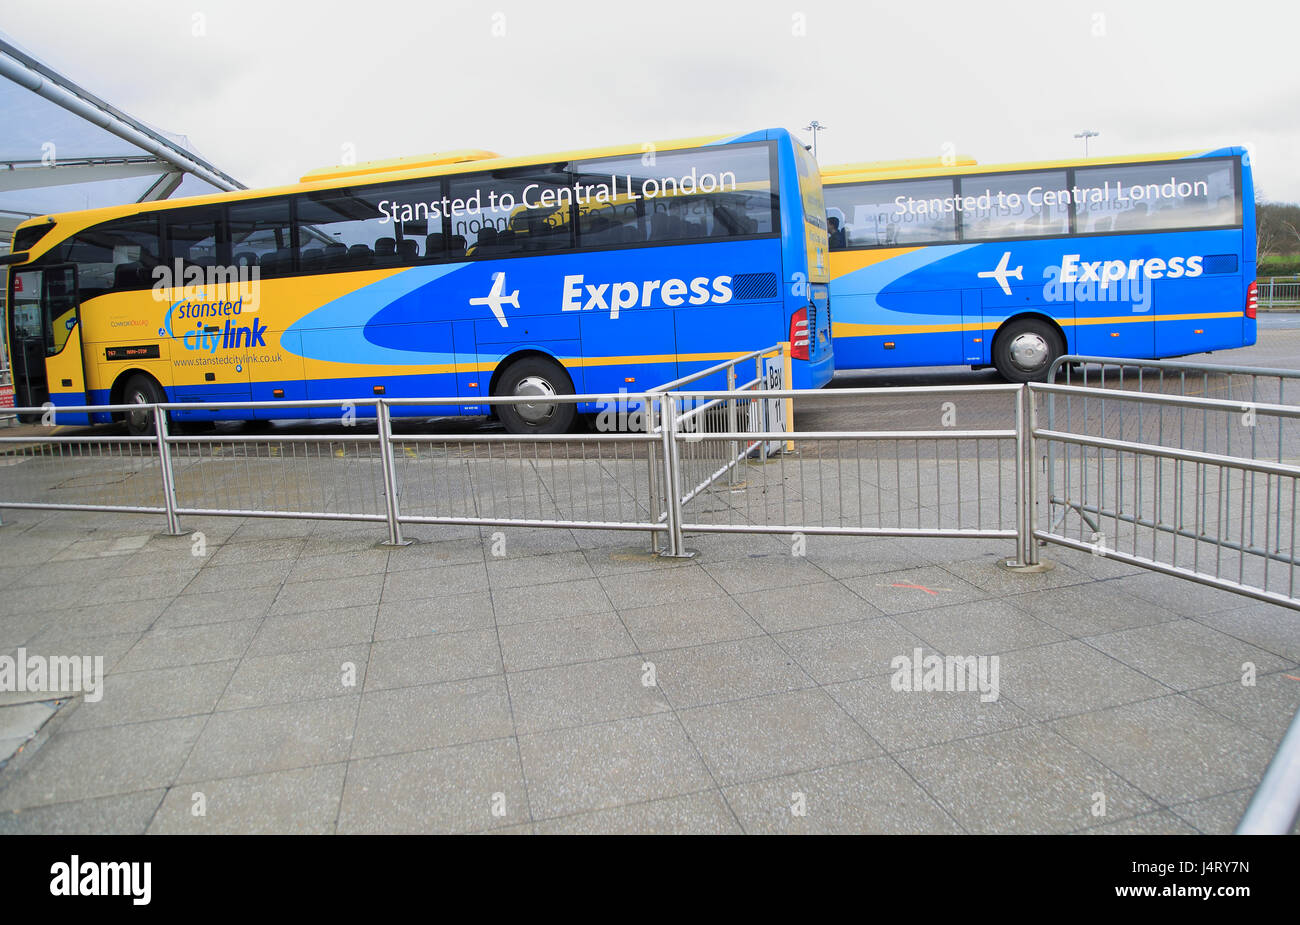 CityLink Stansted Express Coach service de bus vers le centre de Londres à la gare routière, l'aéroport de Stansted, Essex, Angleterre, RU Banque D'Images